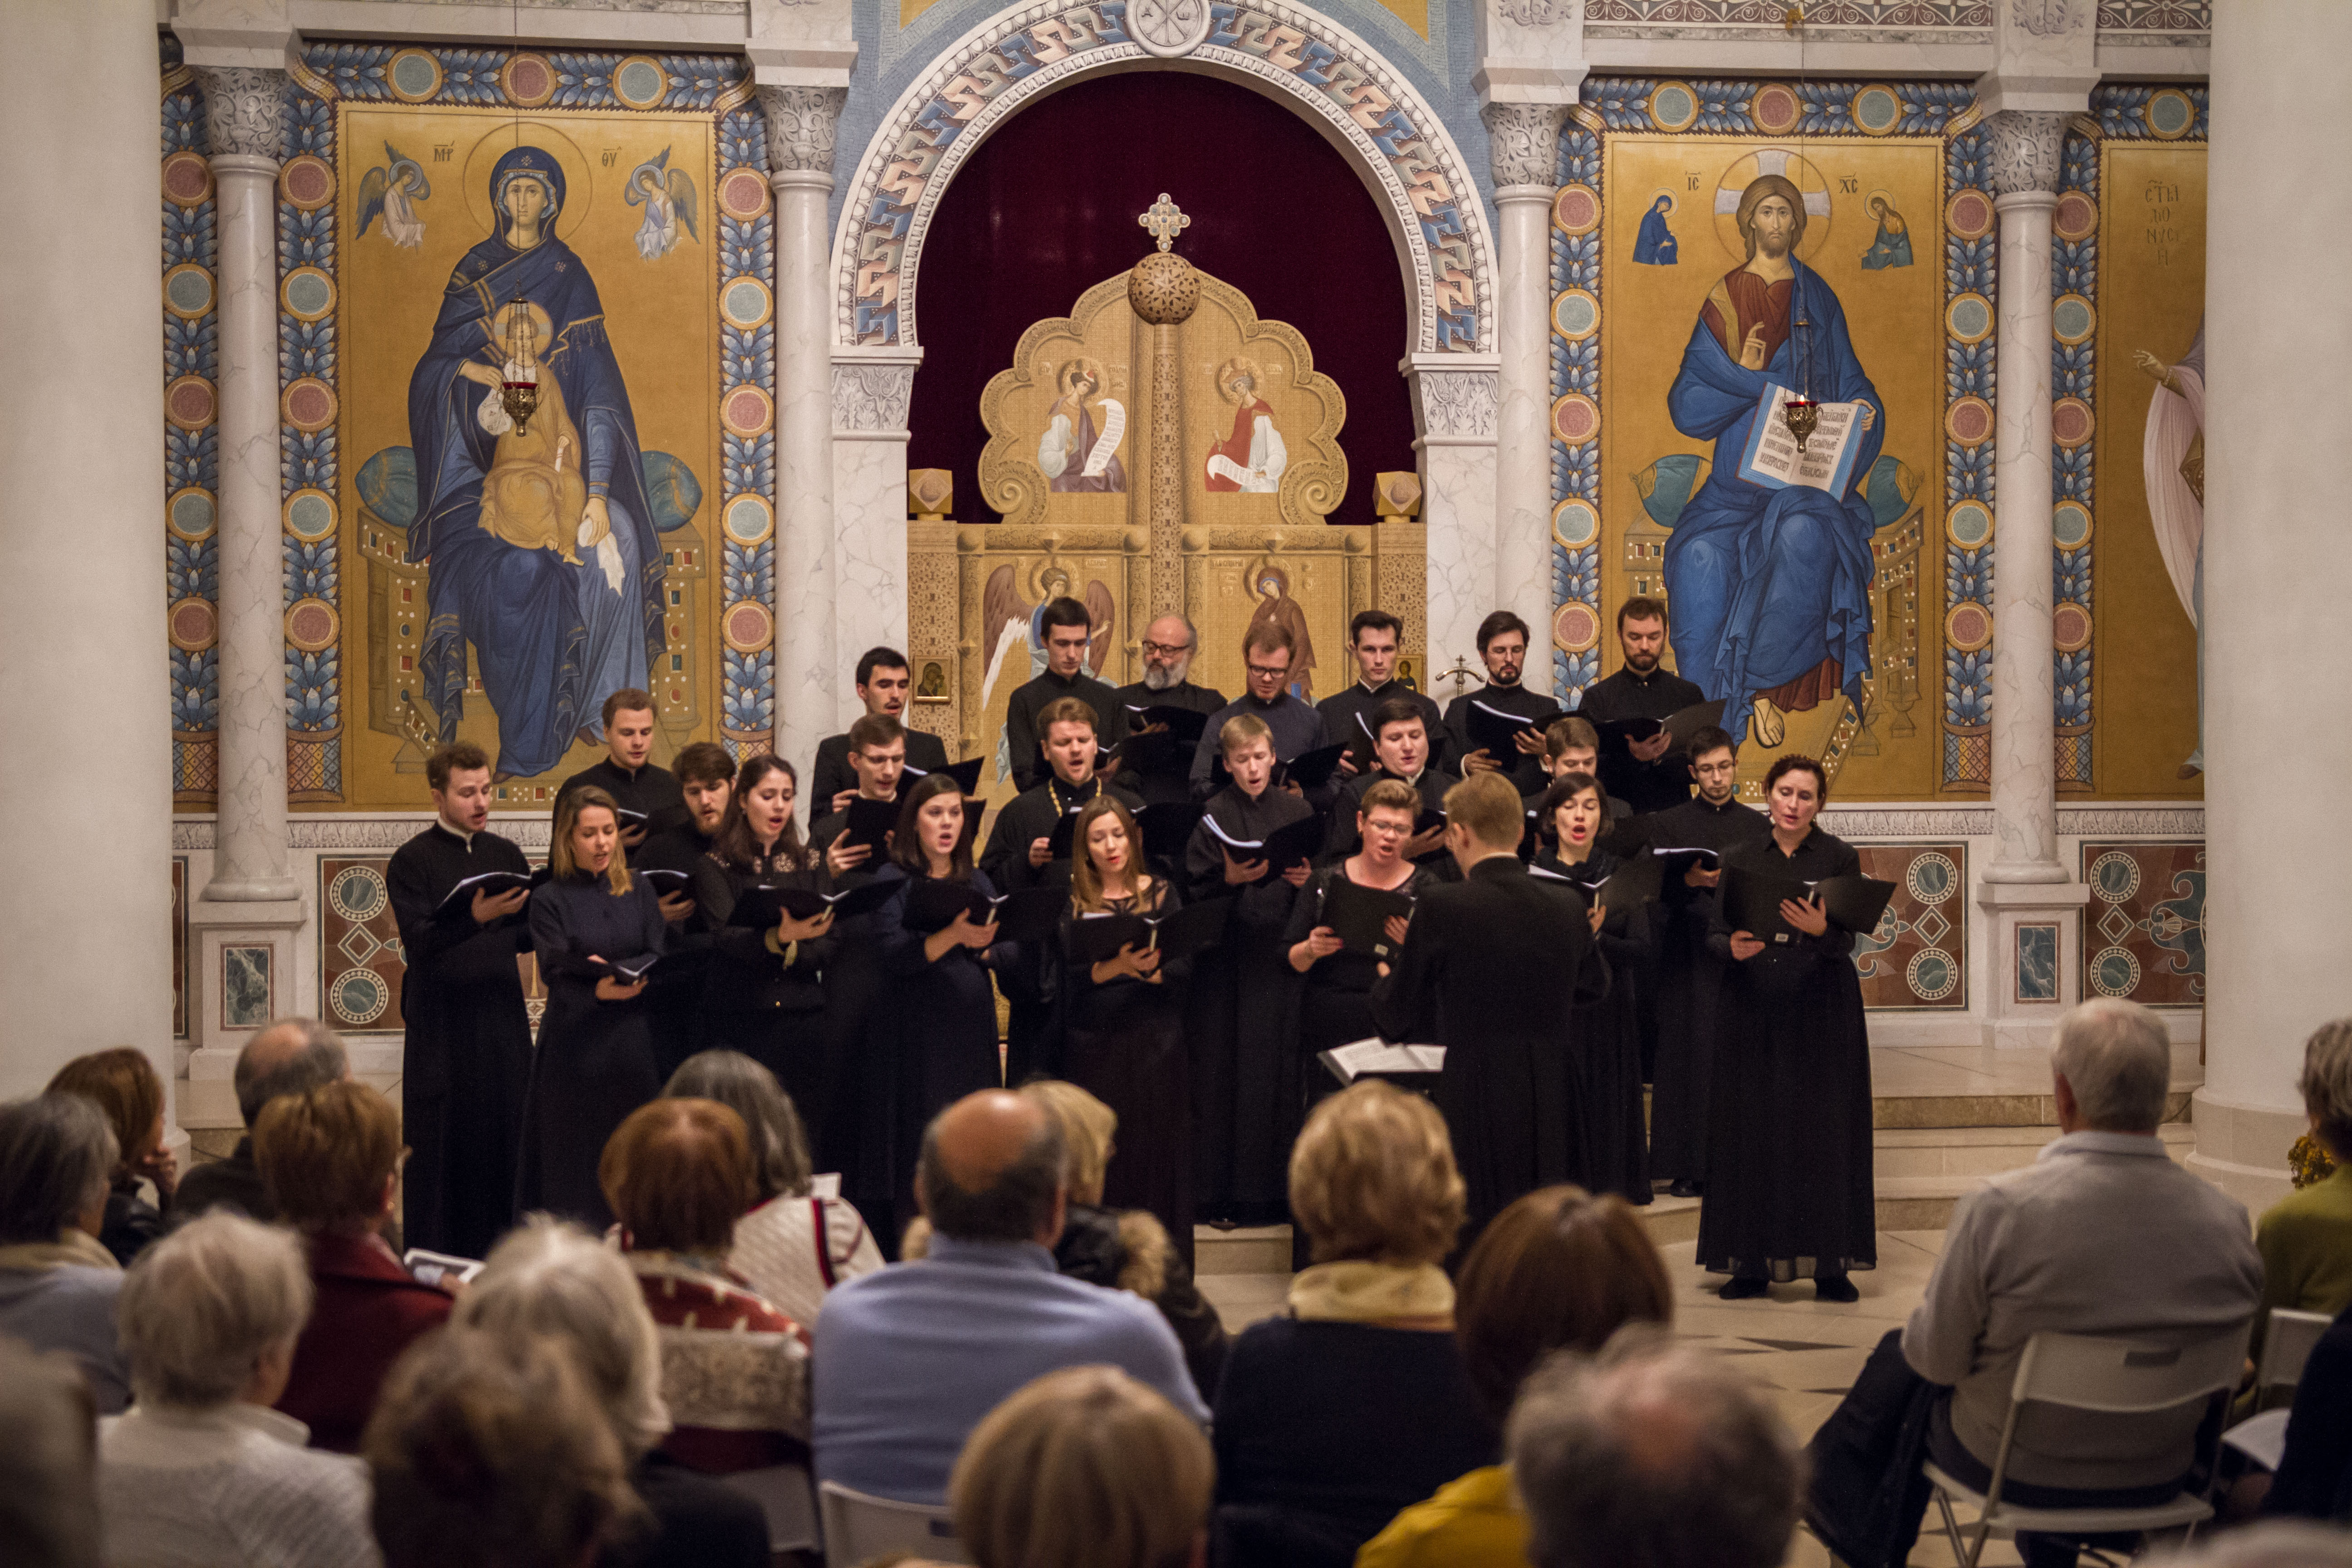 Concert de deux choeurs orthodoxes dédié à la fête de la Nativité du Christ et à la deuxième anniversaire de l’ouverture de la cathédrale